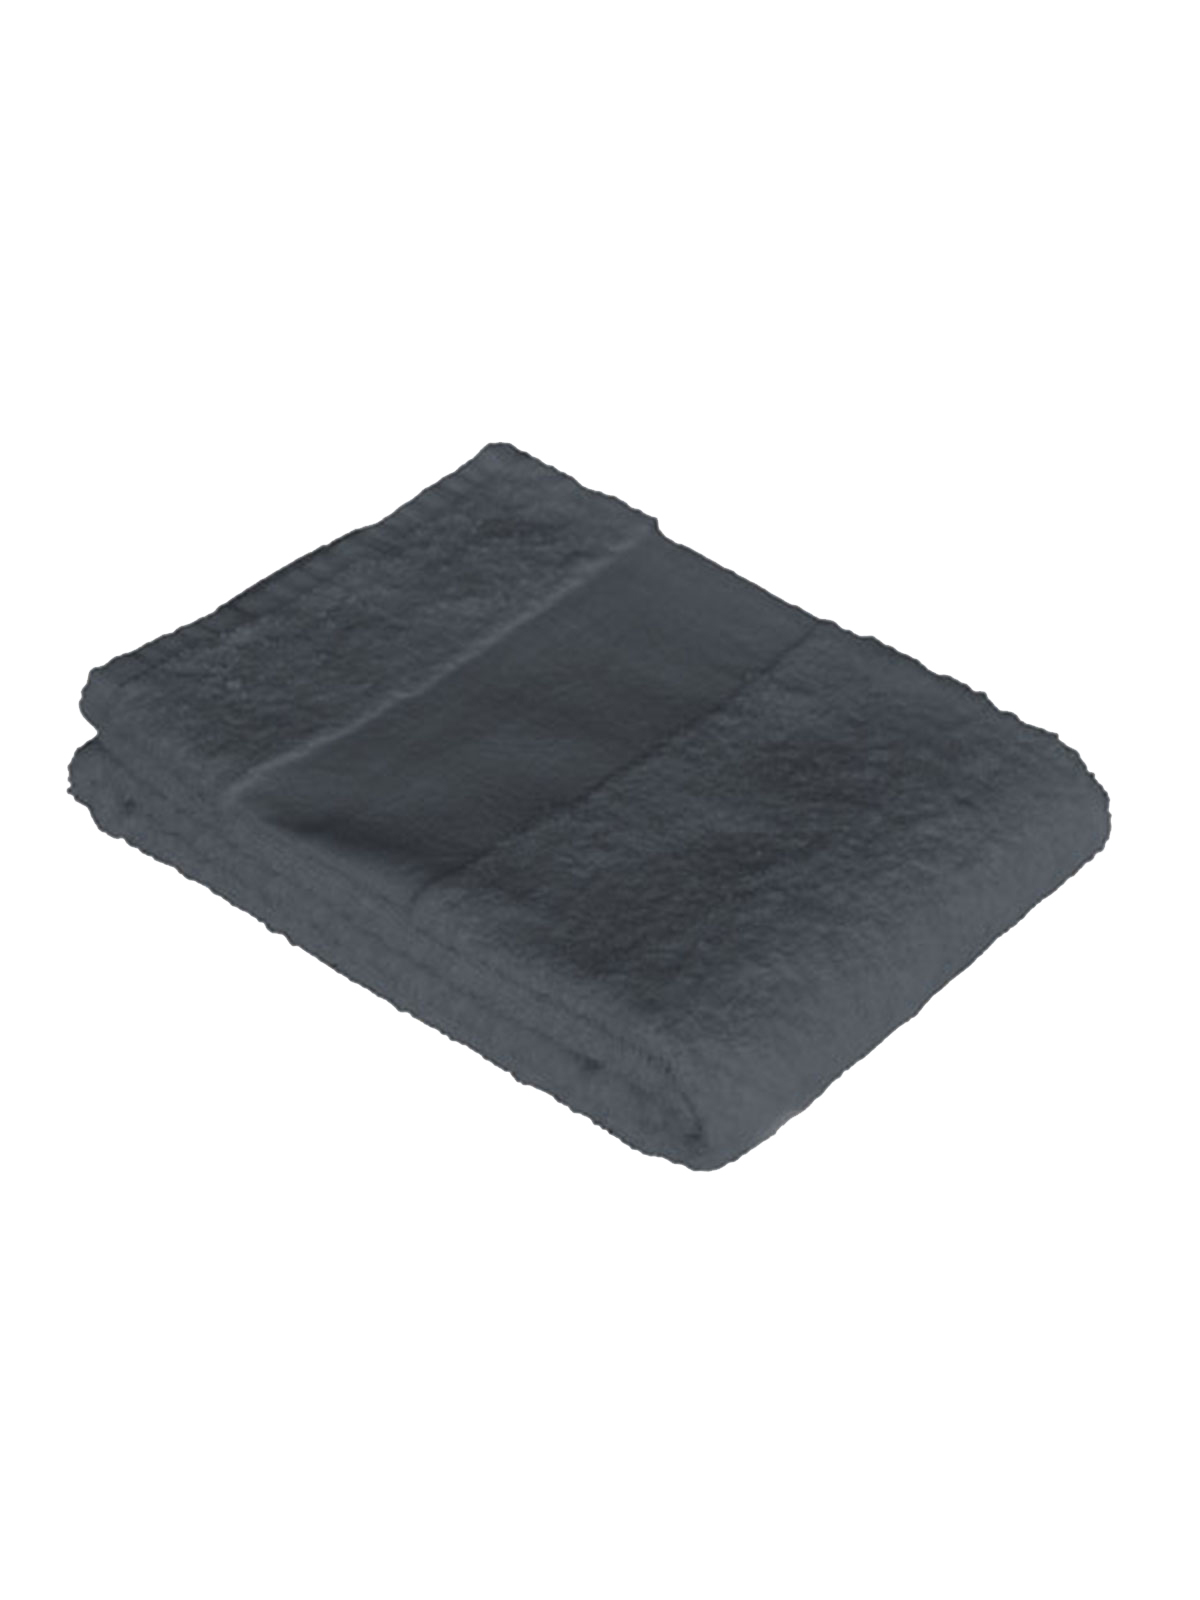 economy-towel-50x100-anthracite-grey.webp